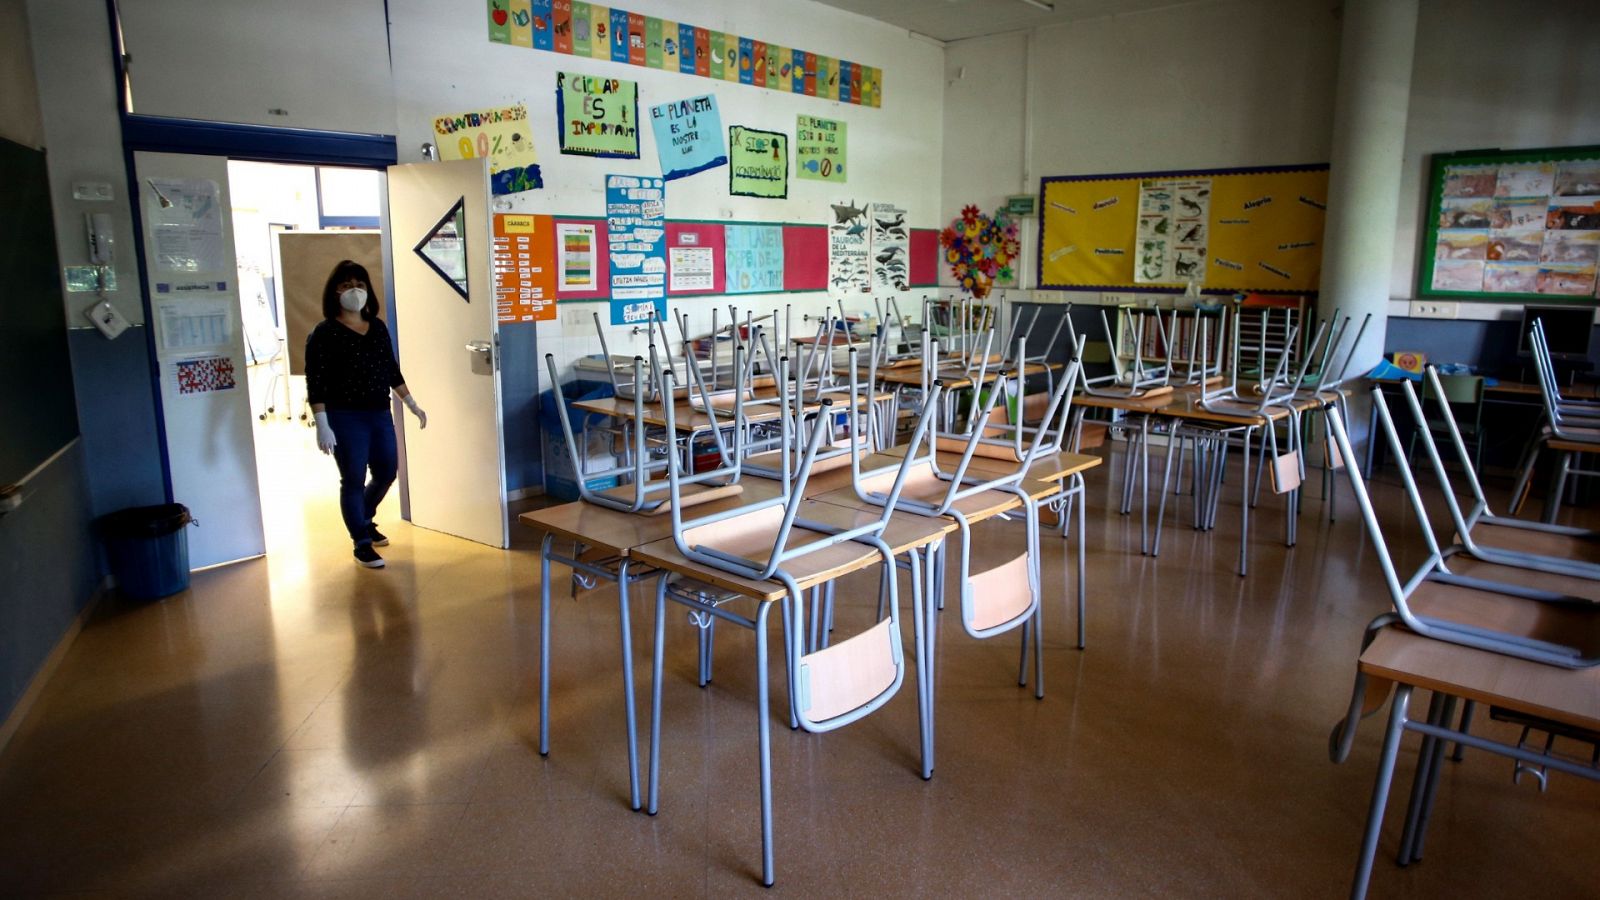 Vista de un aula vacía de la Escola l'Estel de Barcelona